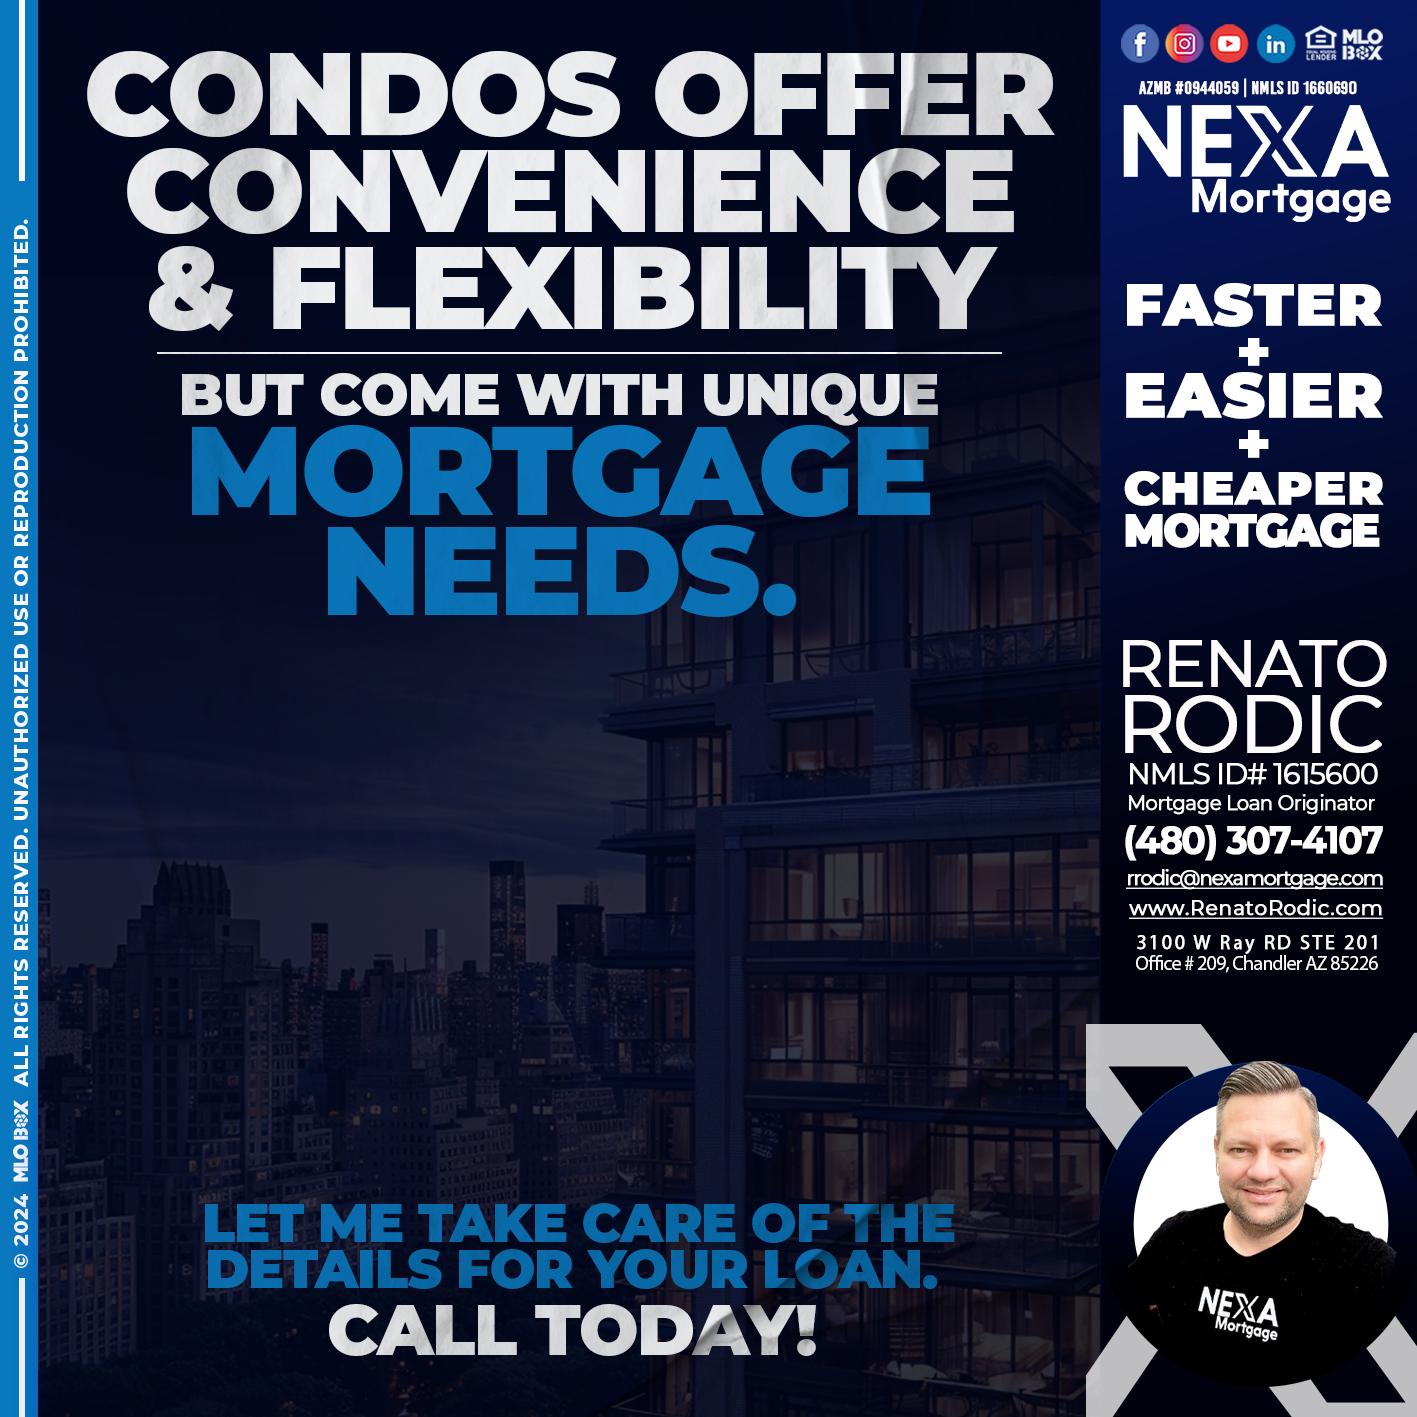 CONDOS - Renato Rodic -Mortgage Loan Originator